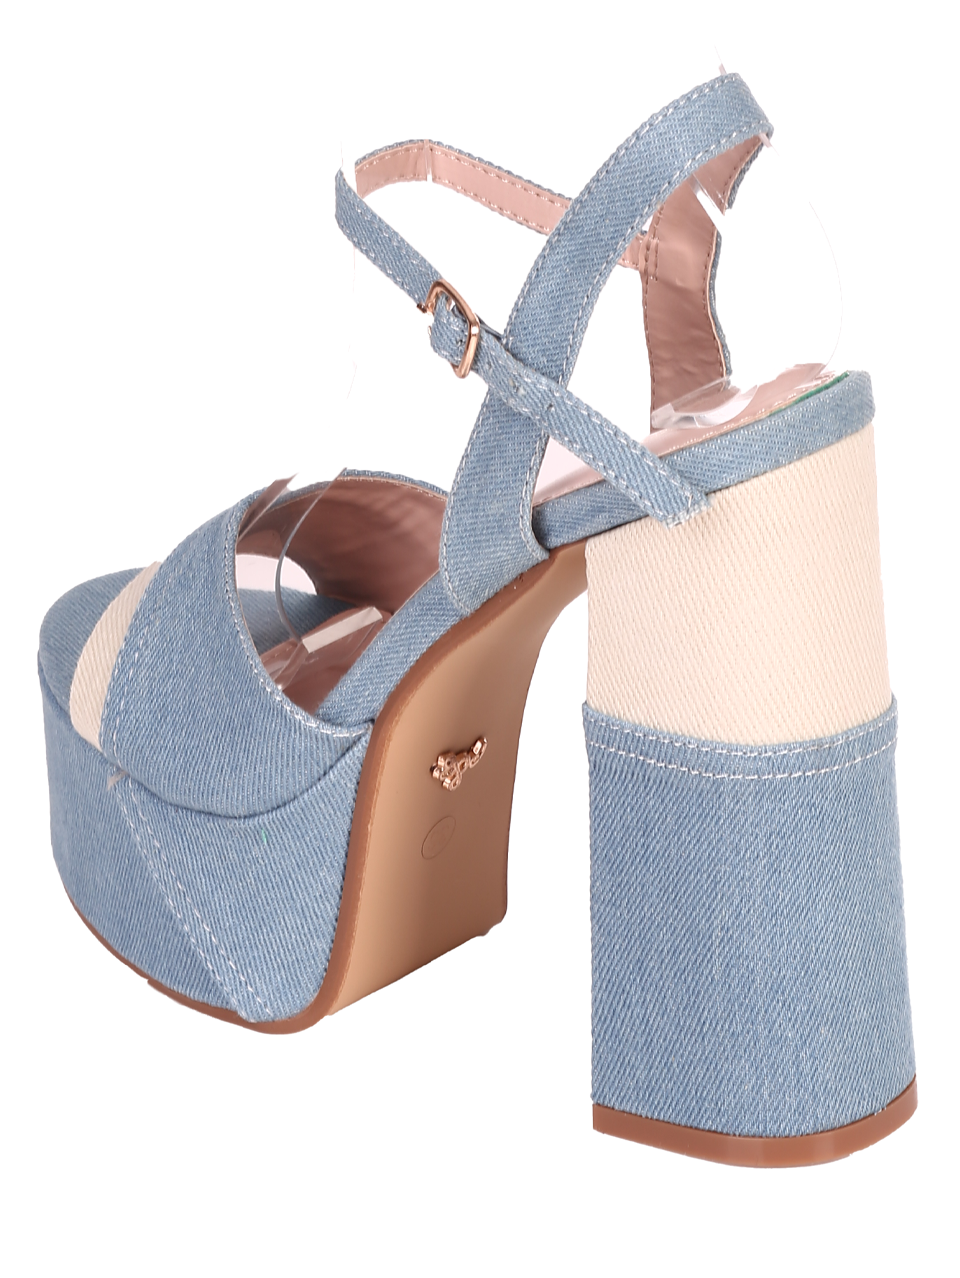 Елегантни дамски сандали в светлосин цвят 4M-24028 lt.blue